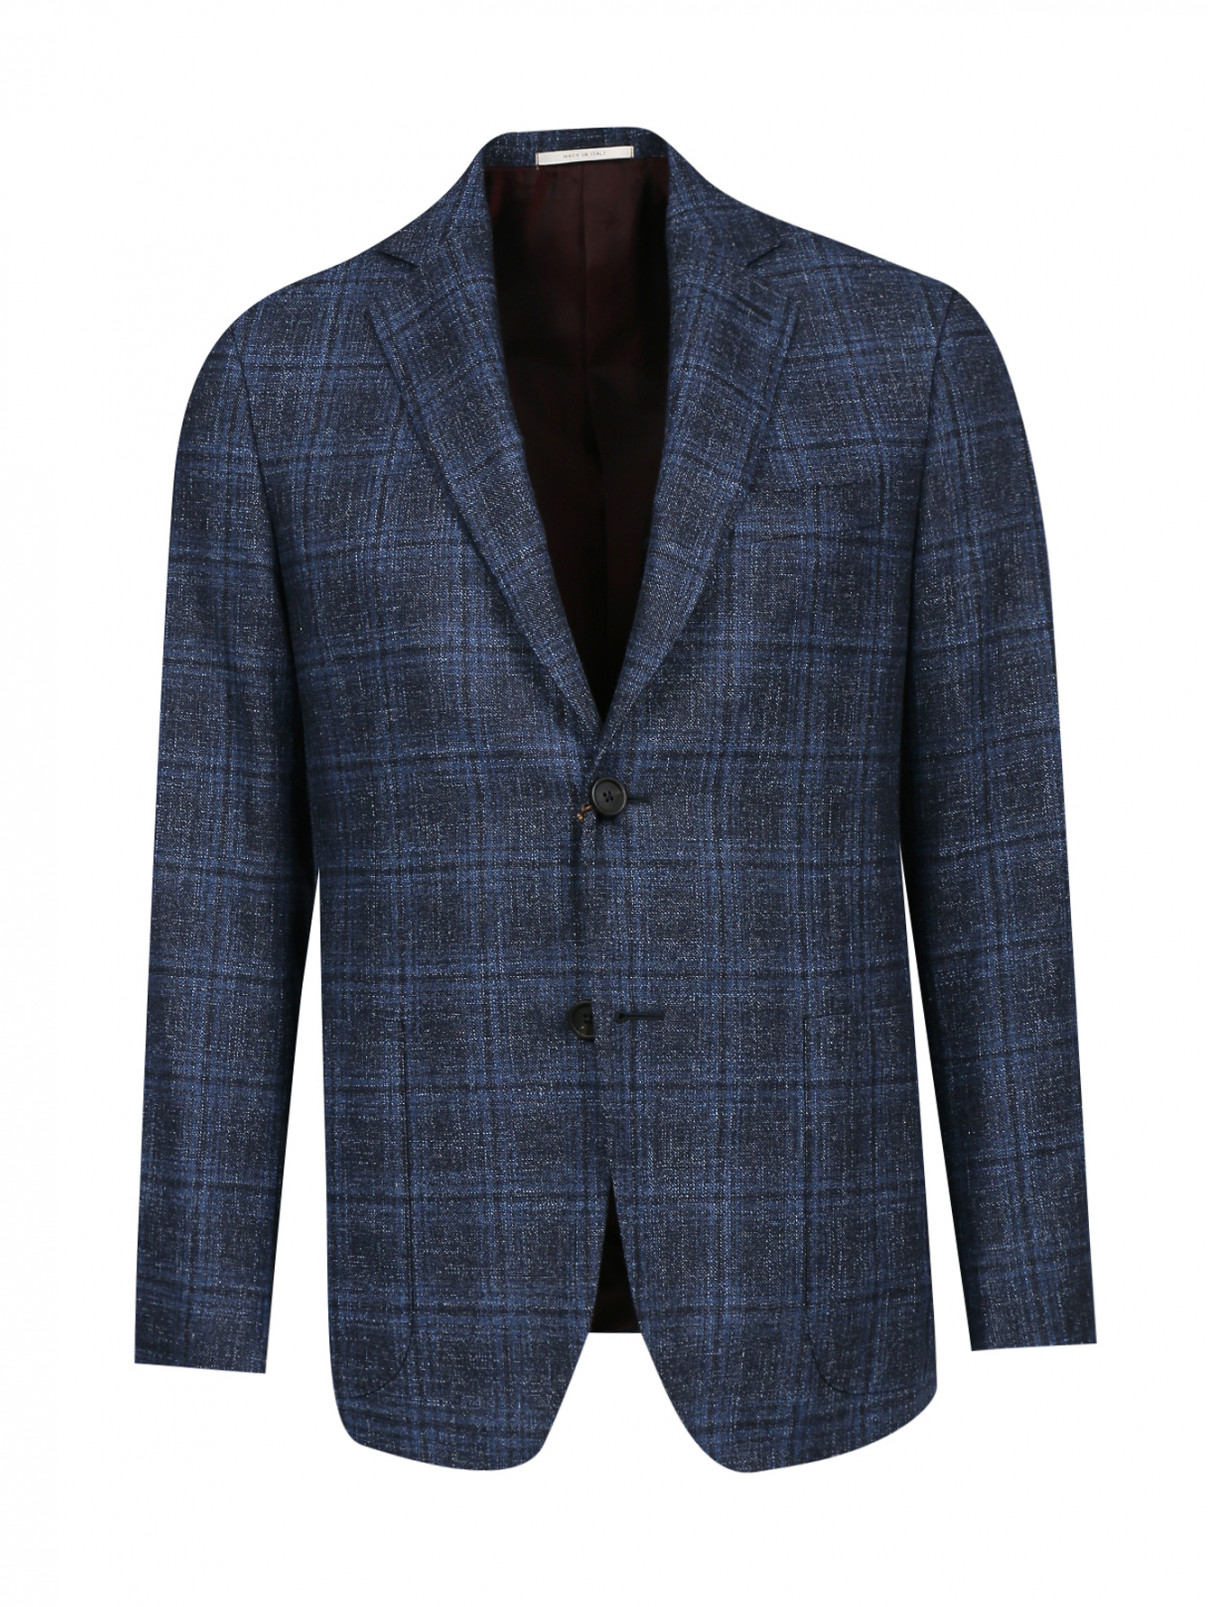 Пиджак однобортный из хлопка и шерсти с узором "клетка" Pal Zileri  –  Общий вид  – Цвет:  Синий